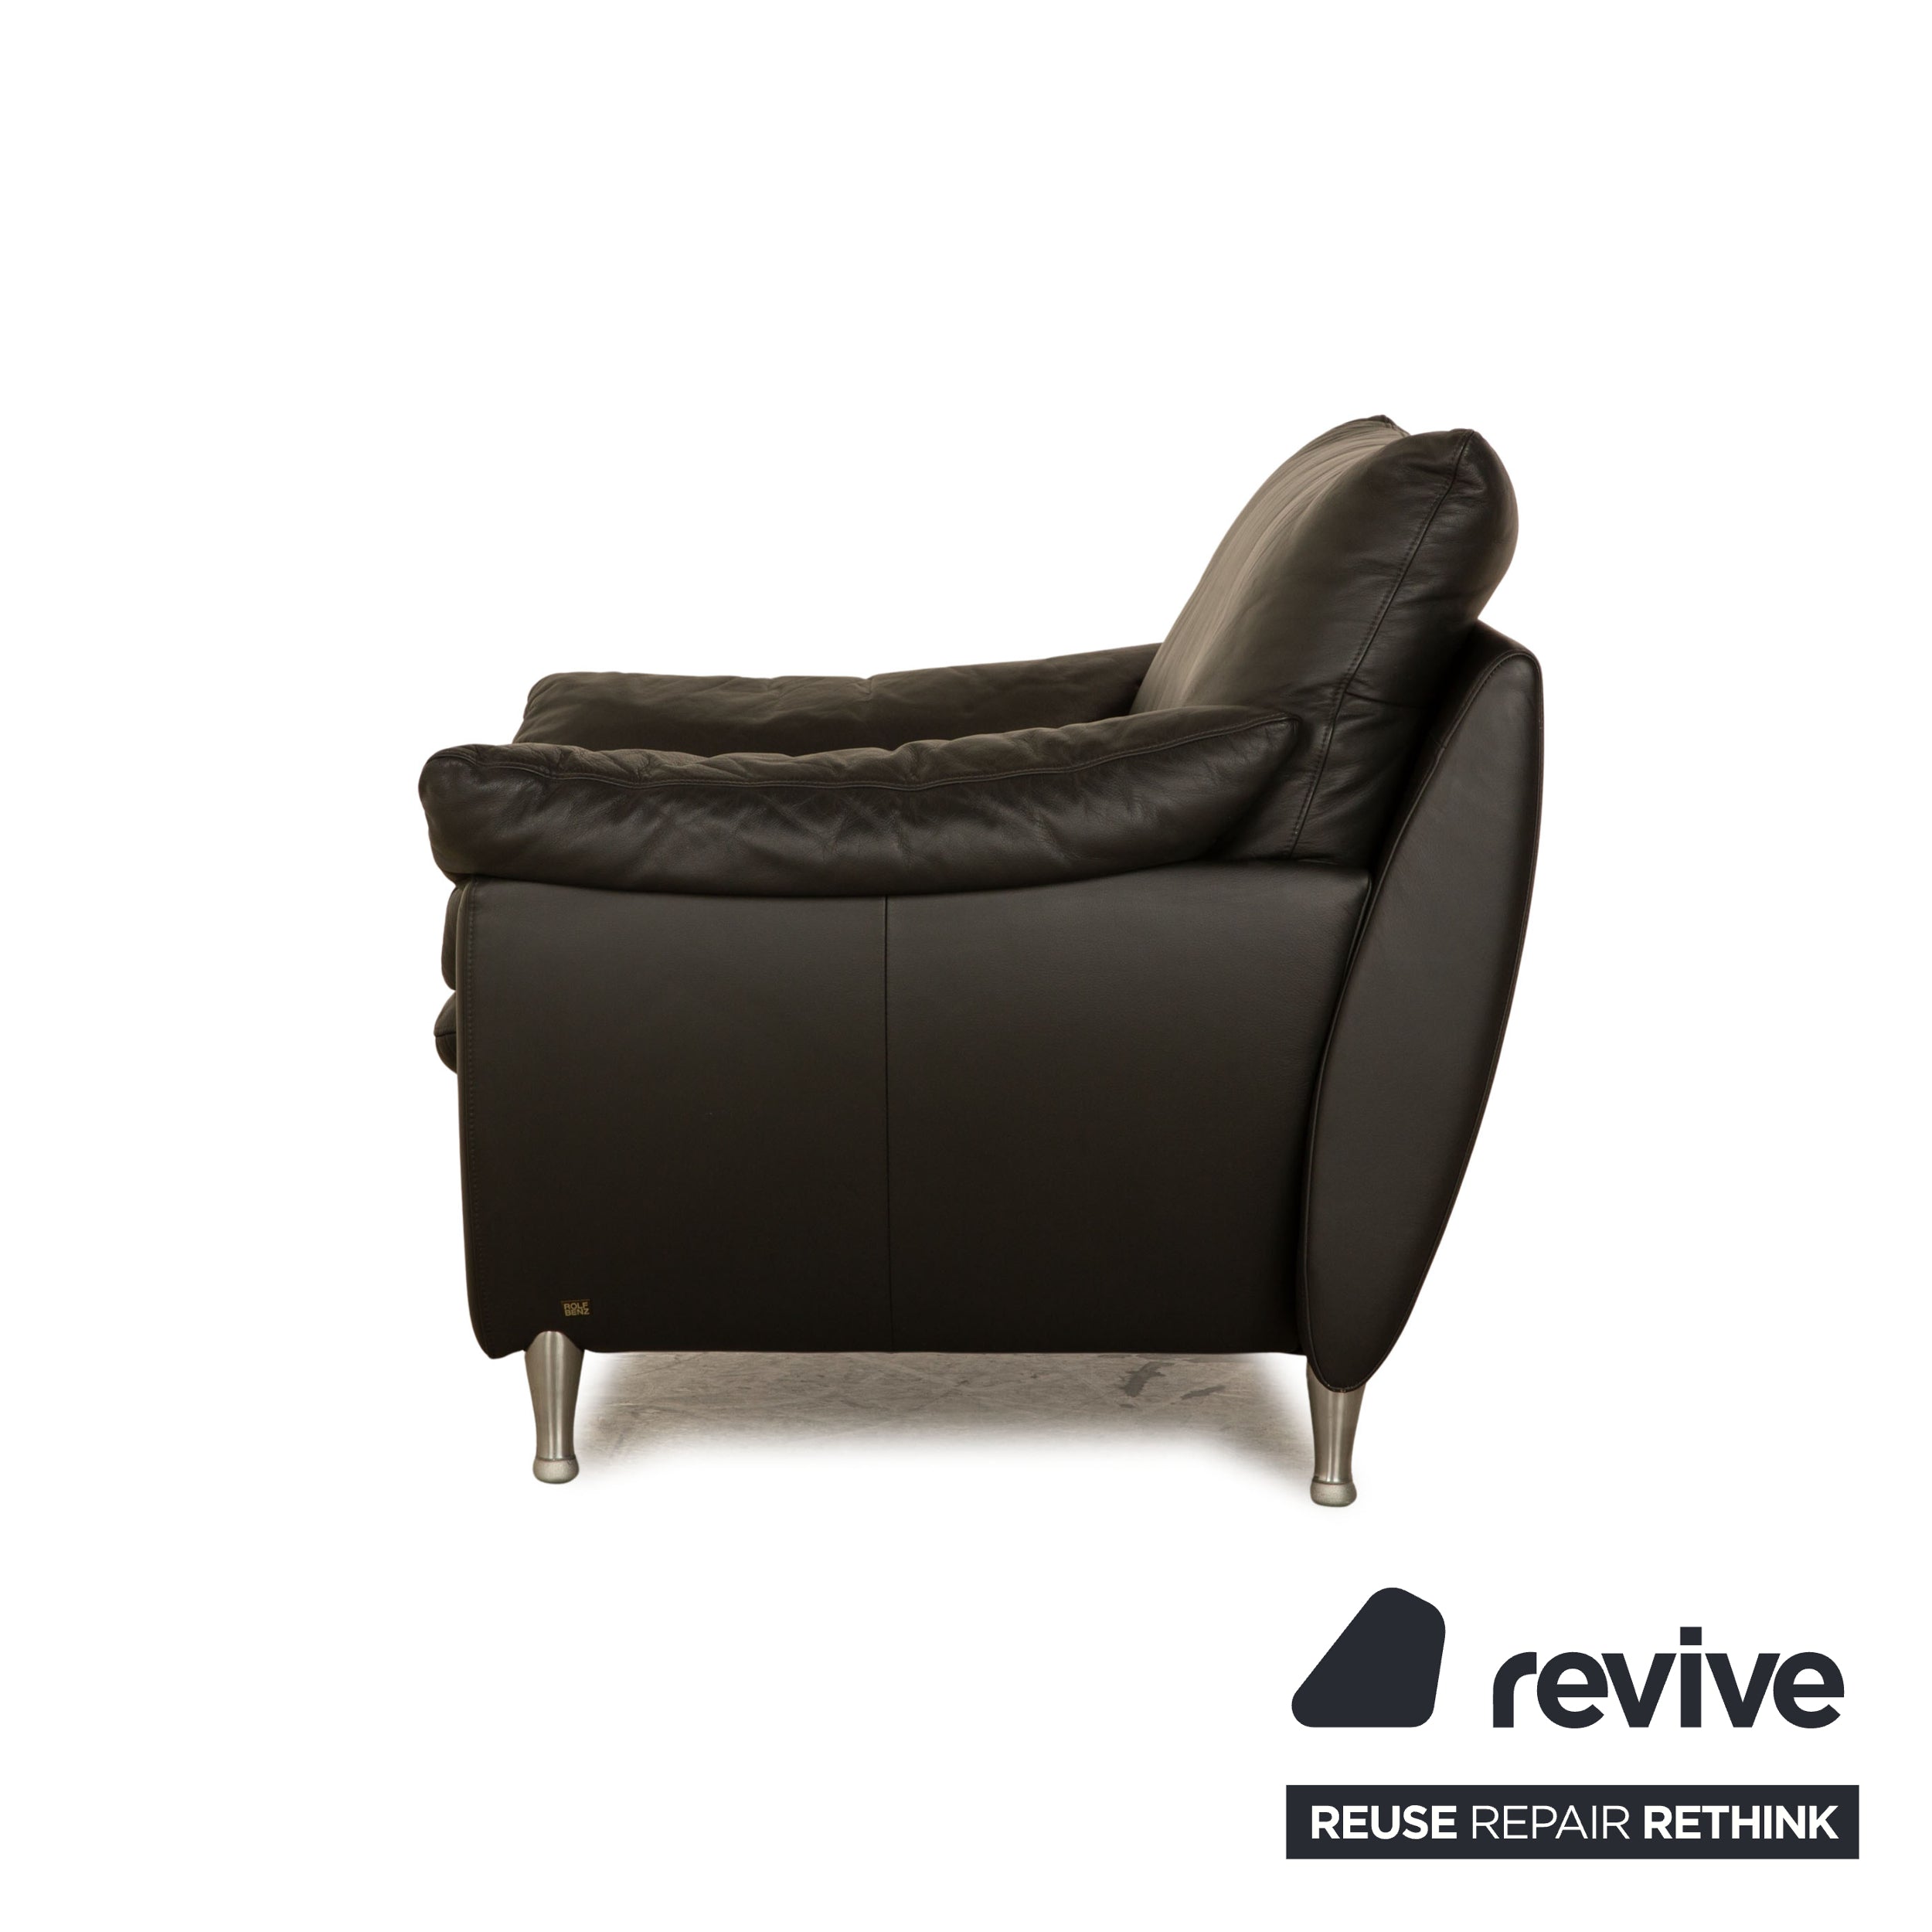 Rolf Benz 5600 leather armchair anthracite dark grey